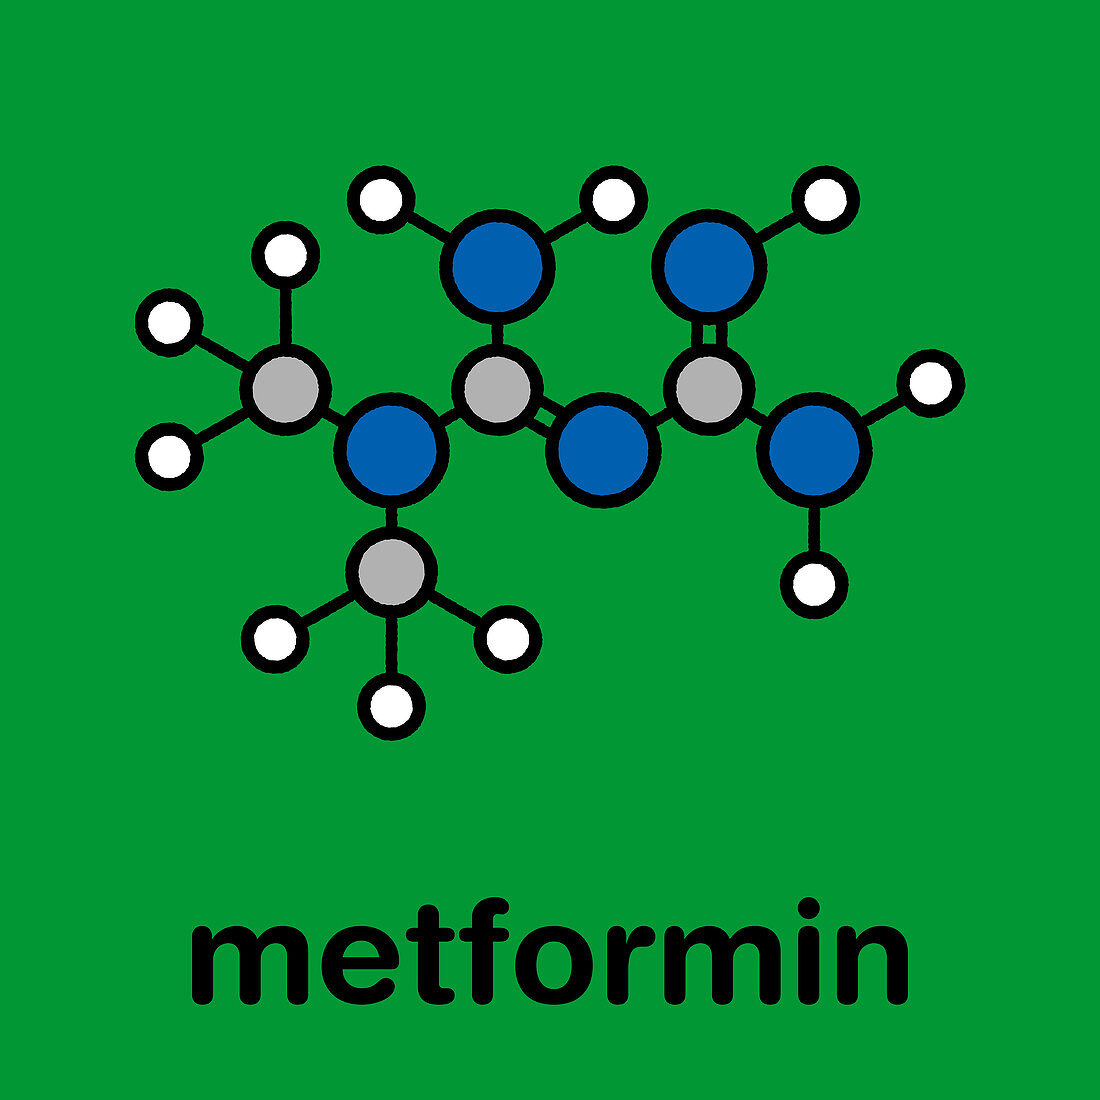 Metformin diabetes drug, molecular model